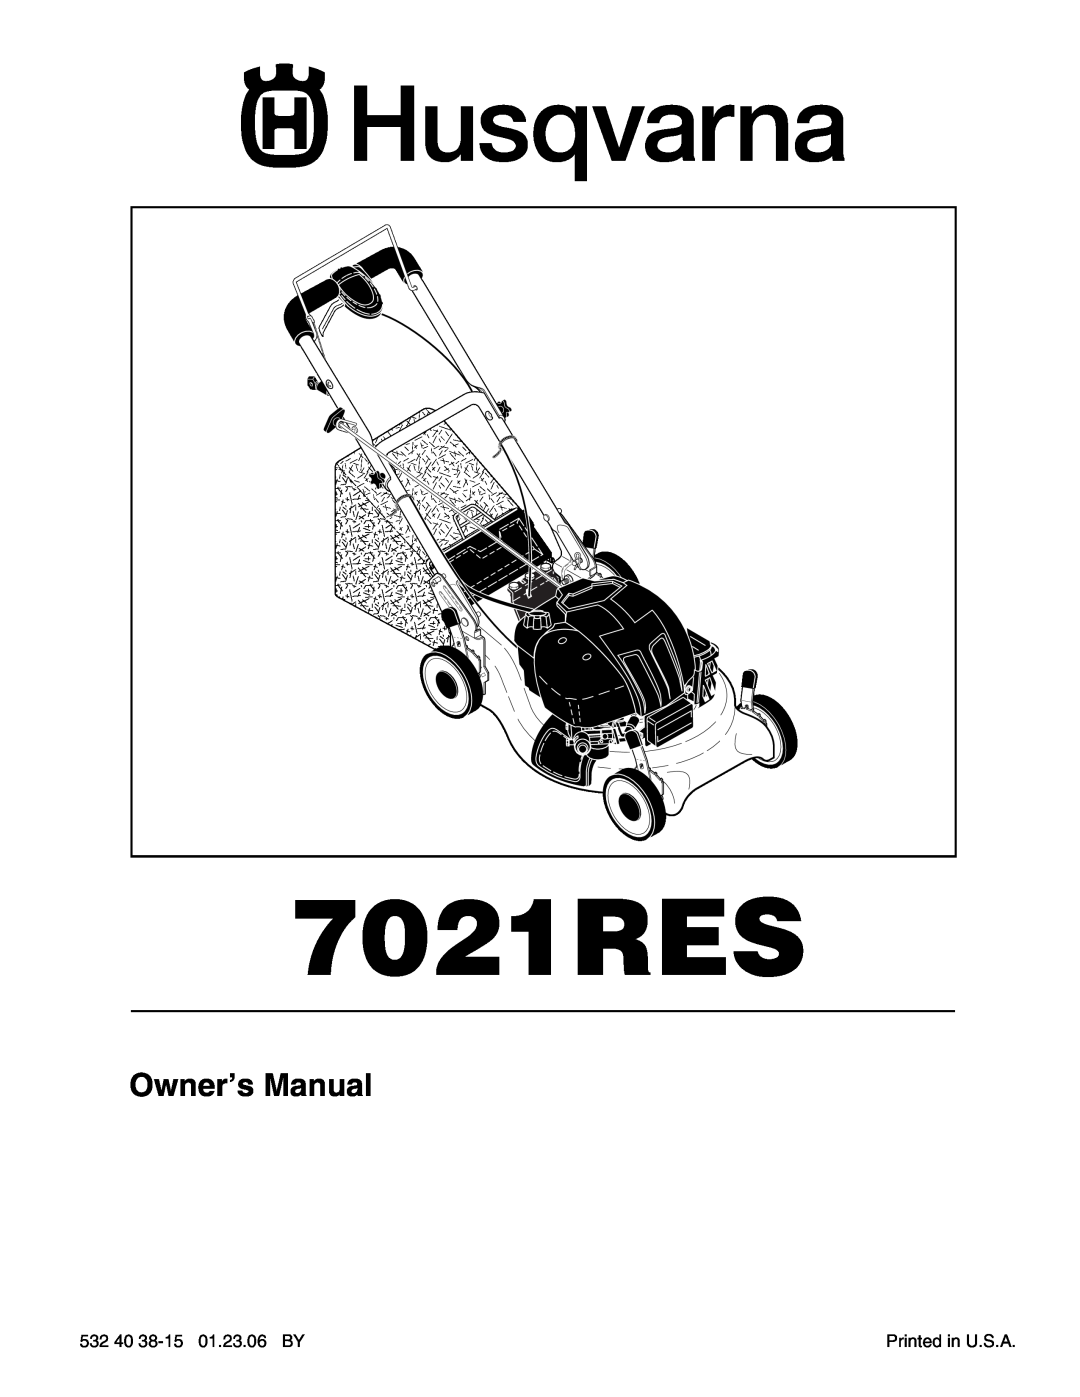 Husqvarna 7021RES owner manual 